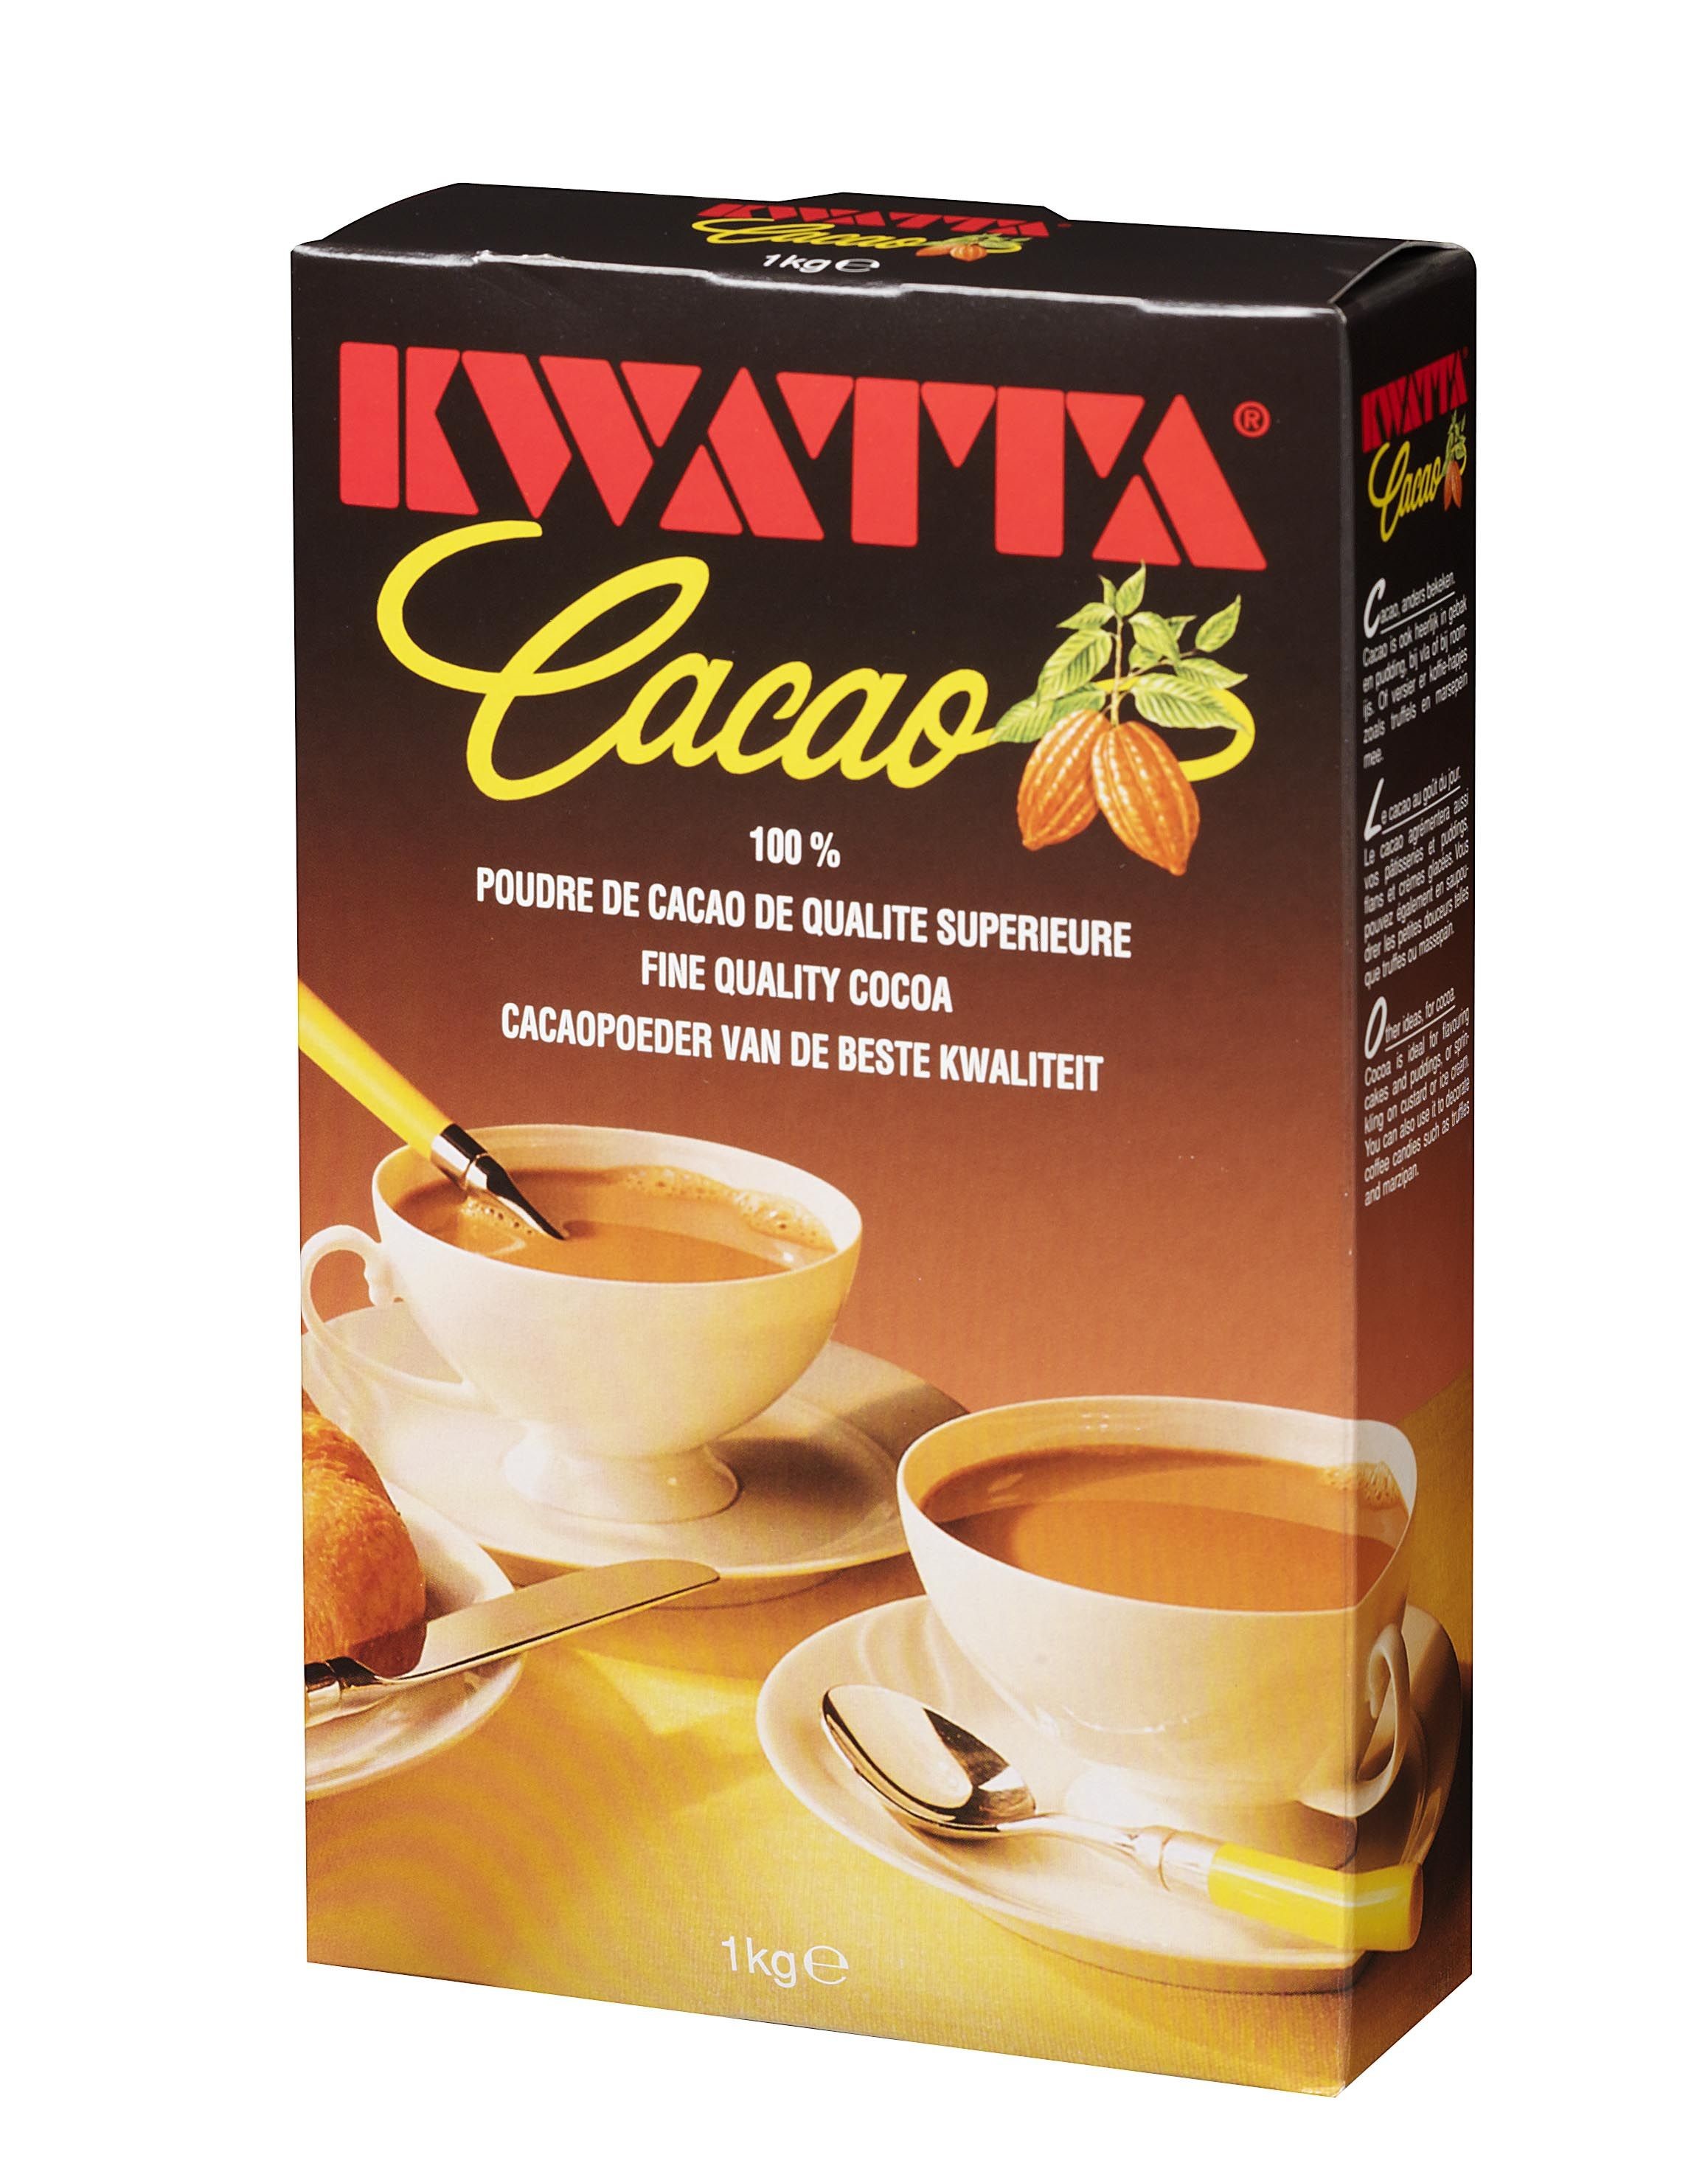 Kwatta cacao poeder 1kg